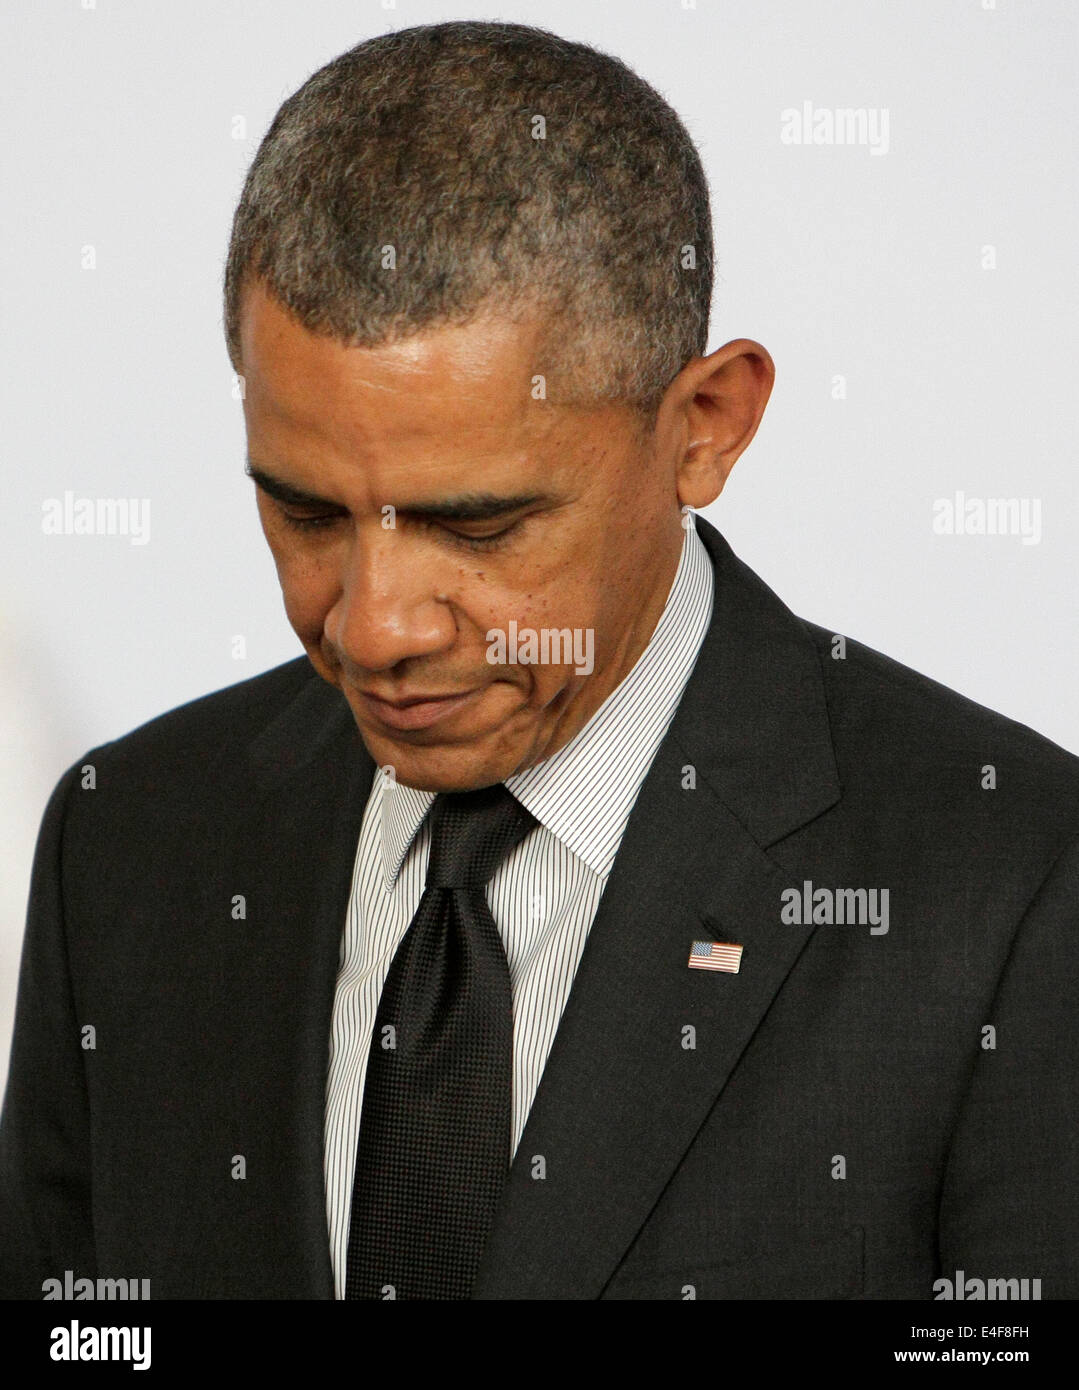 US-Präsident Barack Obama am G7-Gipfel IN Brüssel Belgien 2014 Stockfoto